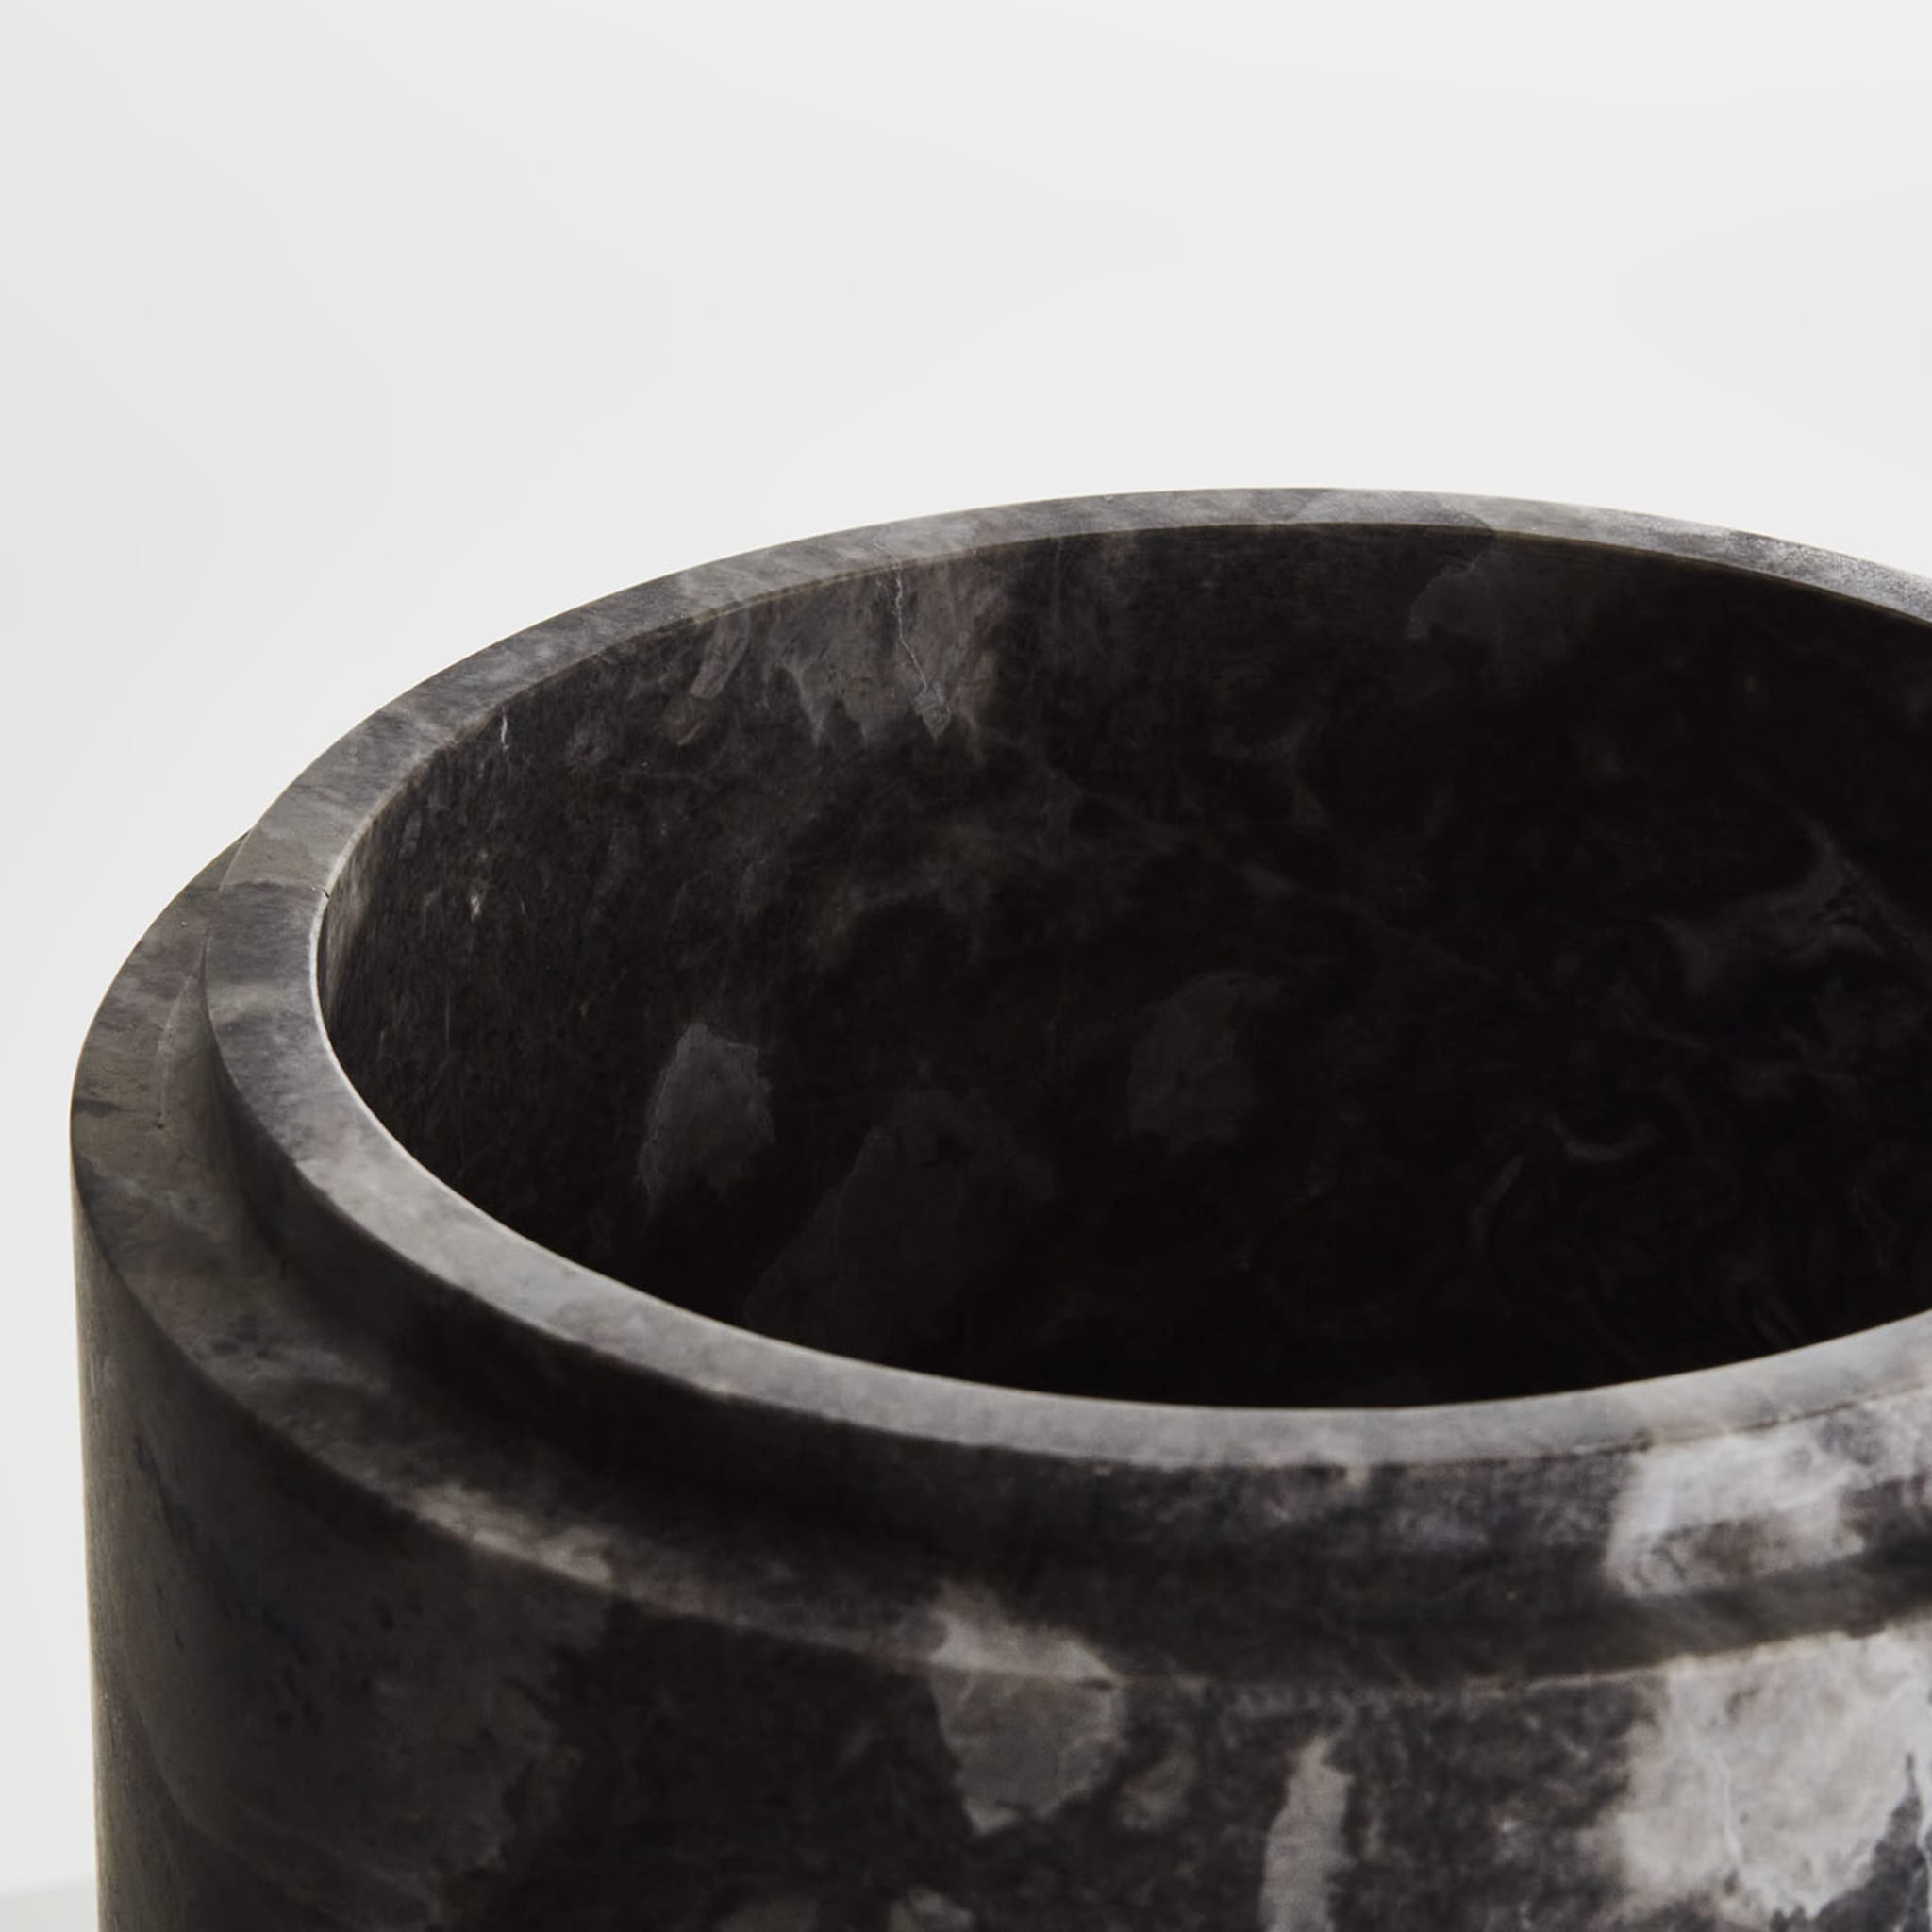 Königliche kleine graue vase von Christophe Pillet - Alternative Ansicht 1